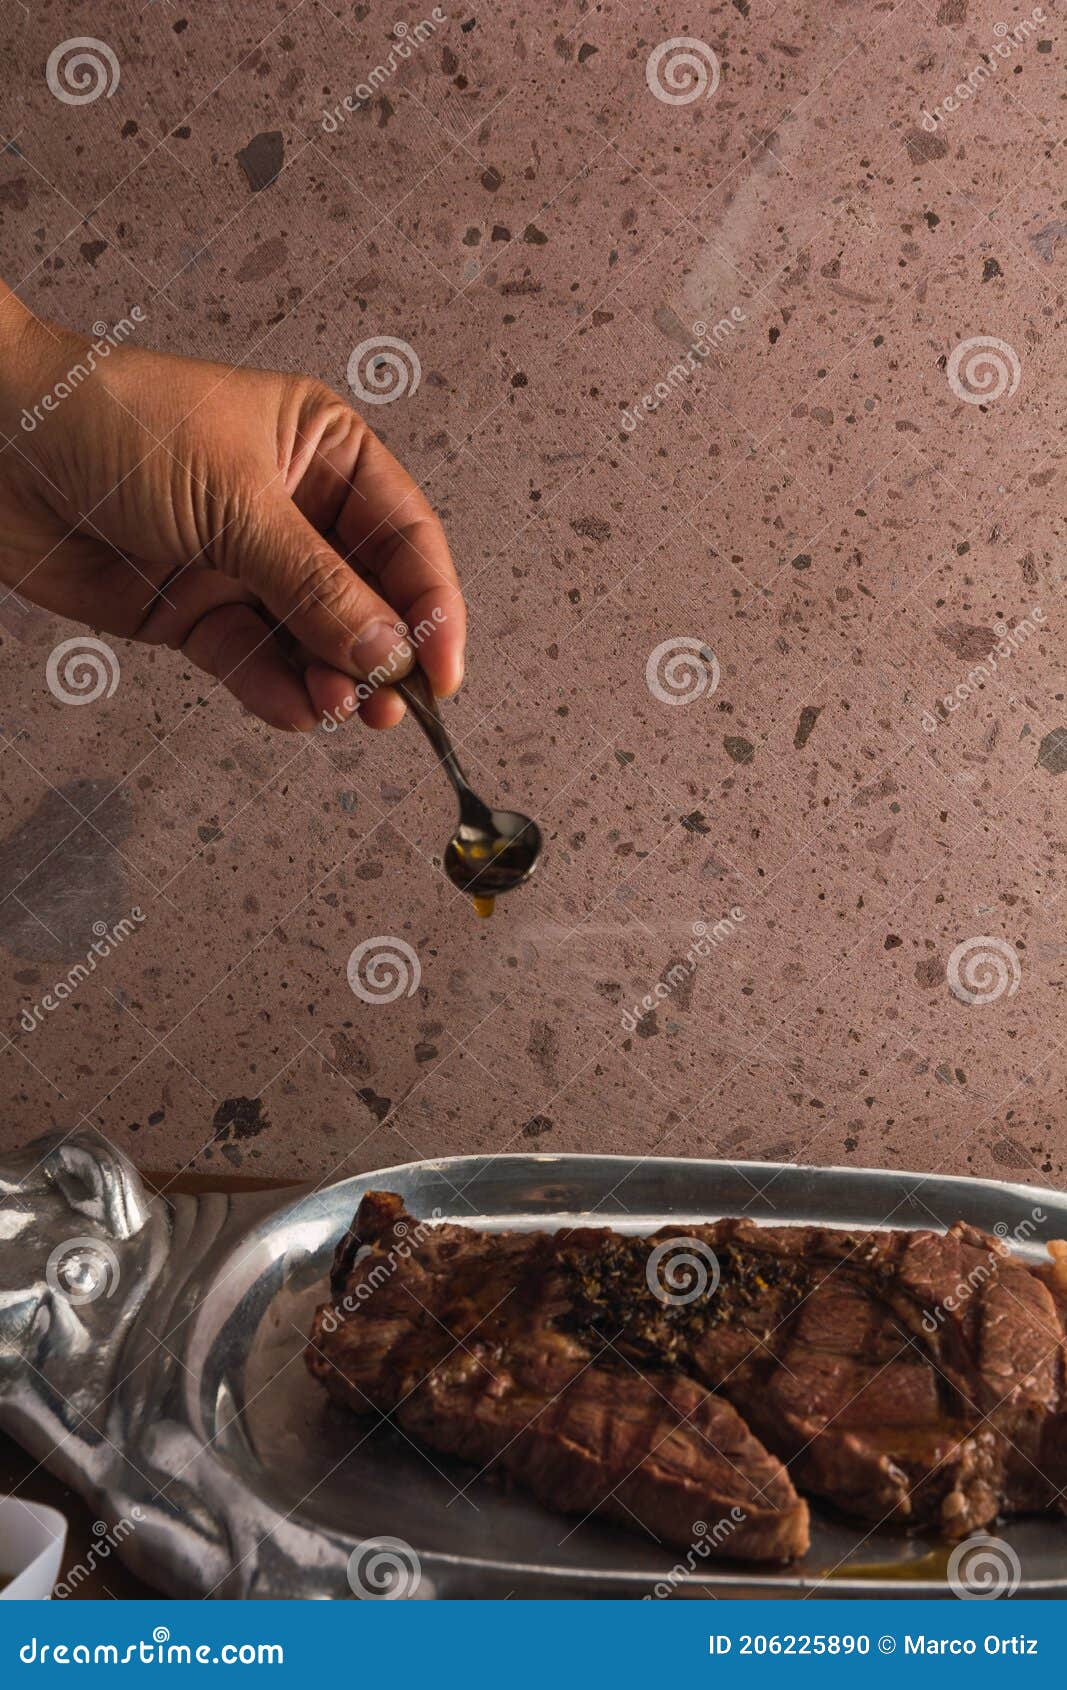 cut of meat `aguja norteÃÂ±a sonora`, served on a silver plate in the  of a cow 13